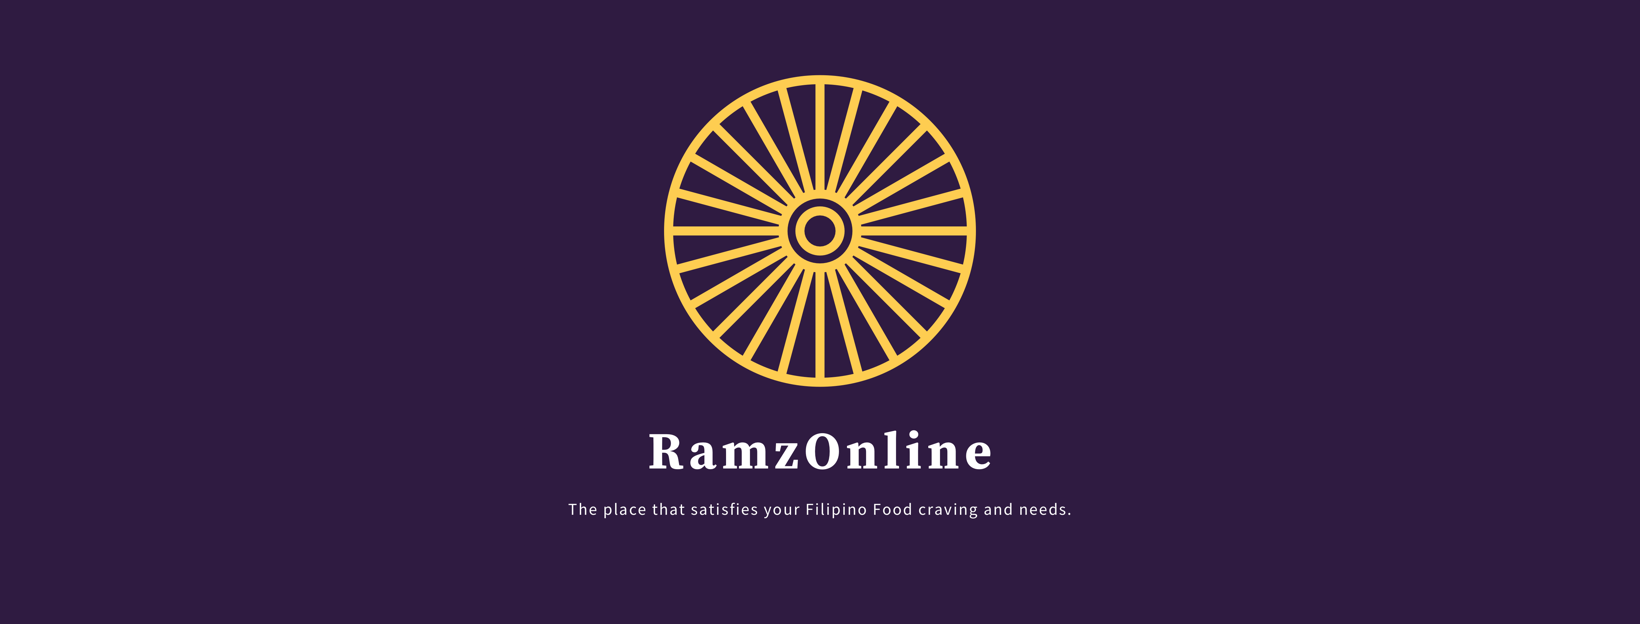 RamzOnline